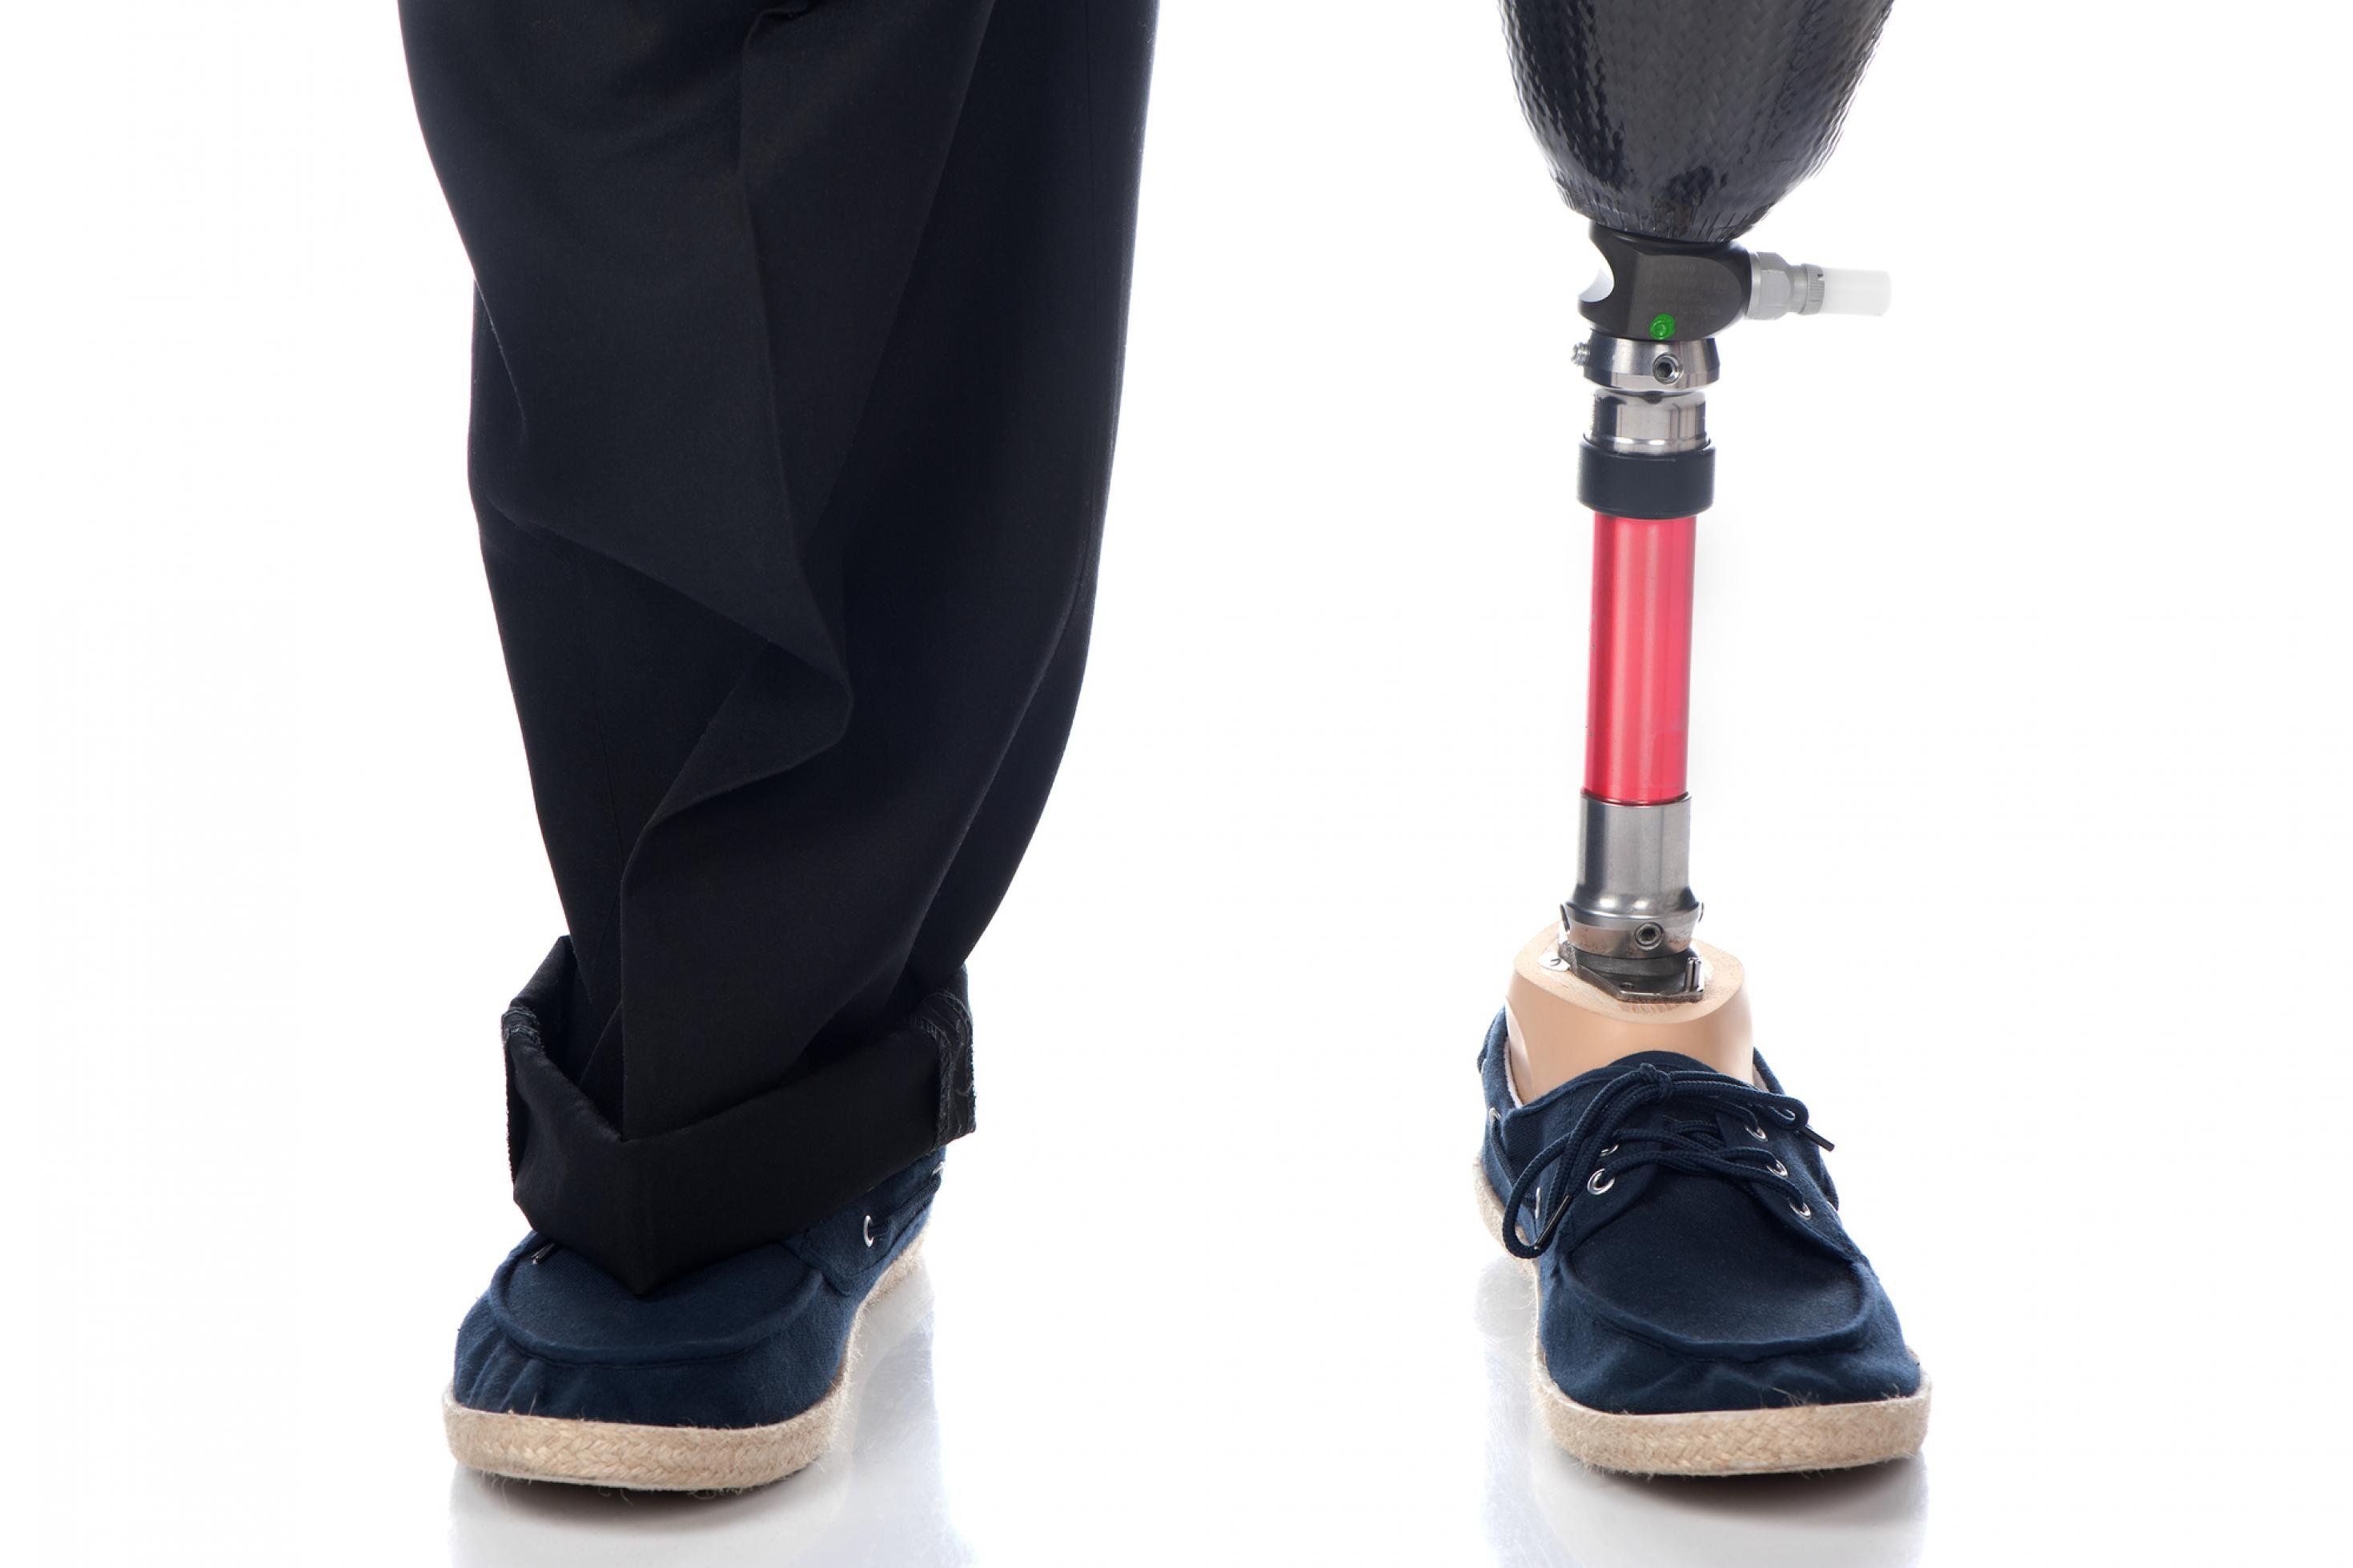 Zwei Beine eines erwachsenen Mannes, der links eine Unterschenkelprothese hat und rechts sein gesundes Bein. Beide Füße stecken im Schuhen.